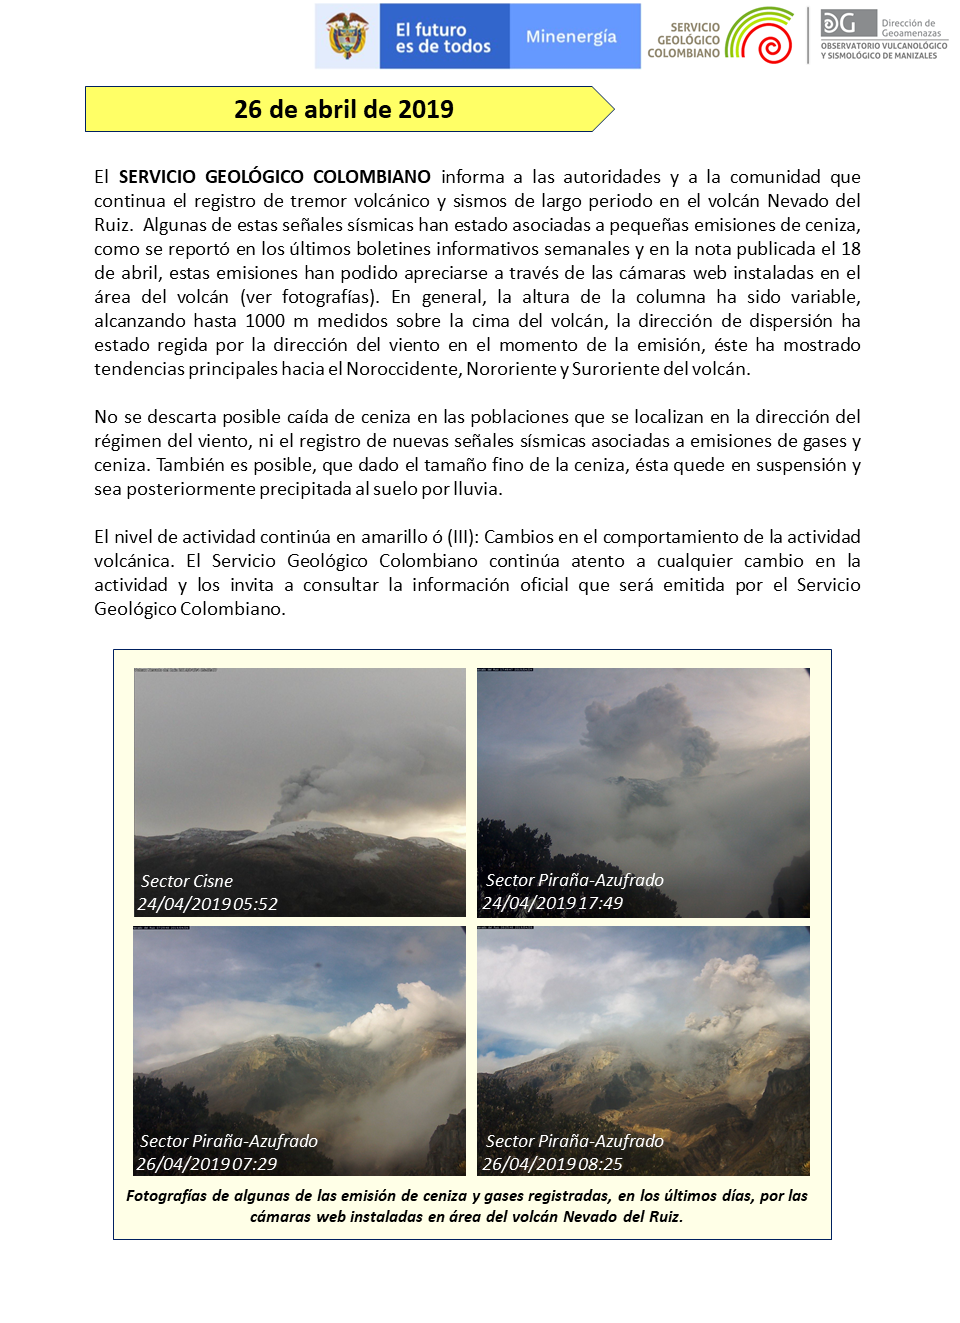 Emisión de ceniza del Volcán Nevado del Ruiz, el 26 de abril de 2019